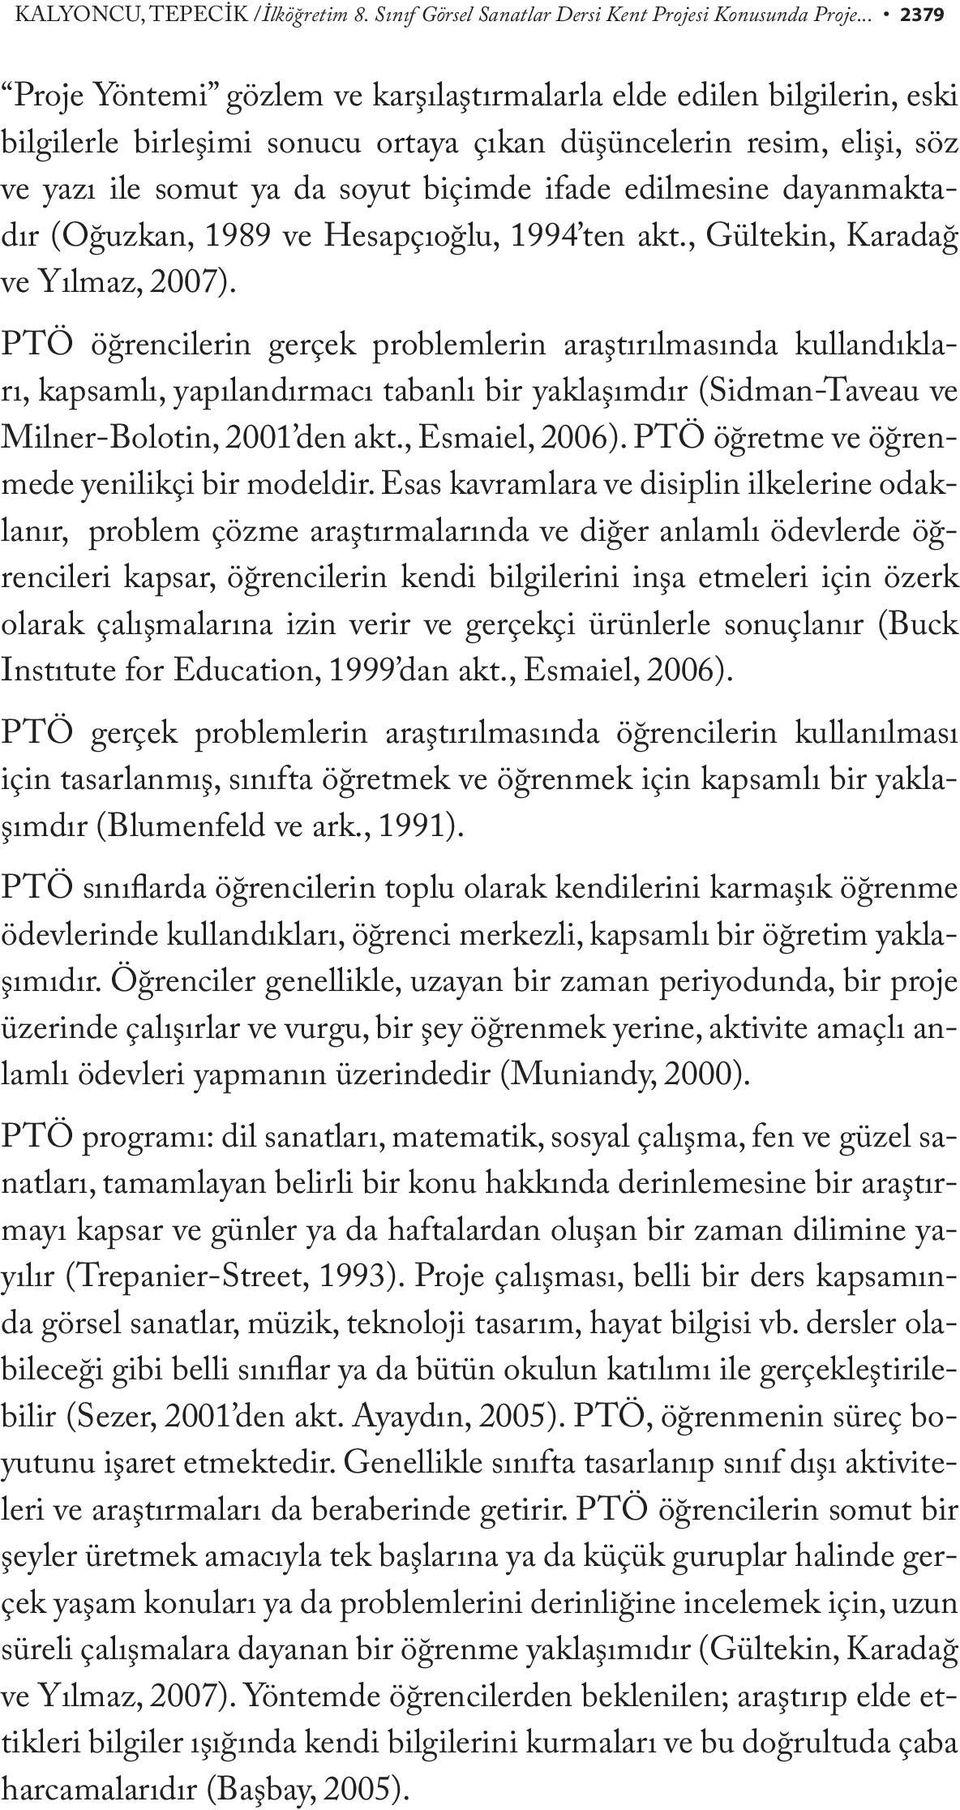 edilmesine dayanmaktadır (Oğuzkan, 1989 ve Hesapçıoğlu, 1994 ten akt., Gültekin, Karadağ ve Yılmaz, 2007).